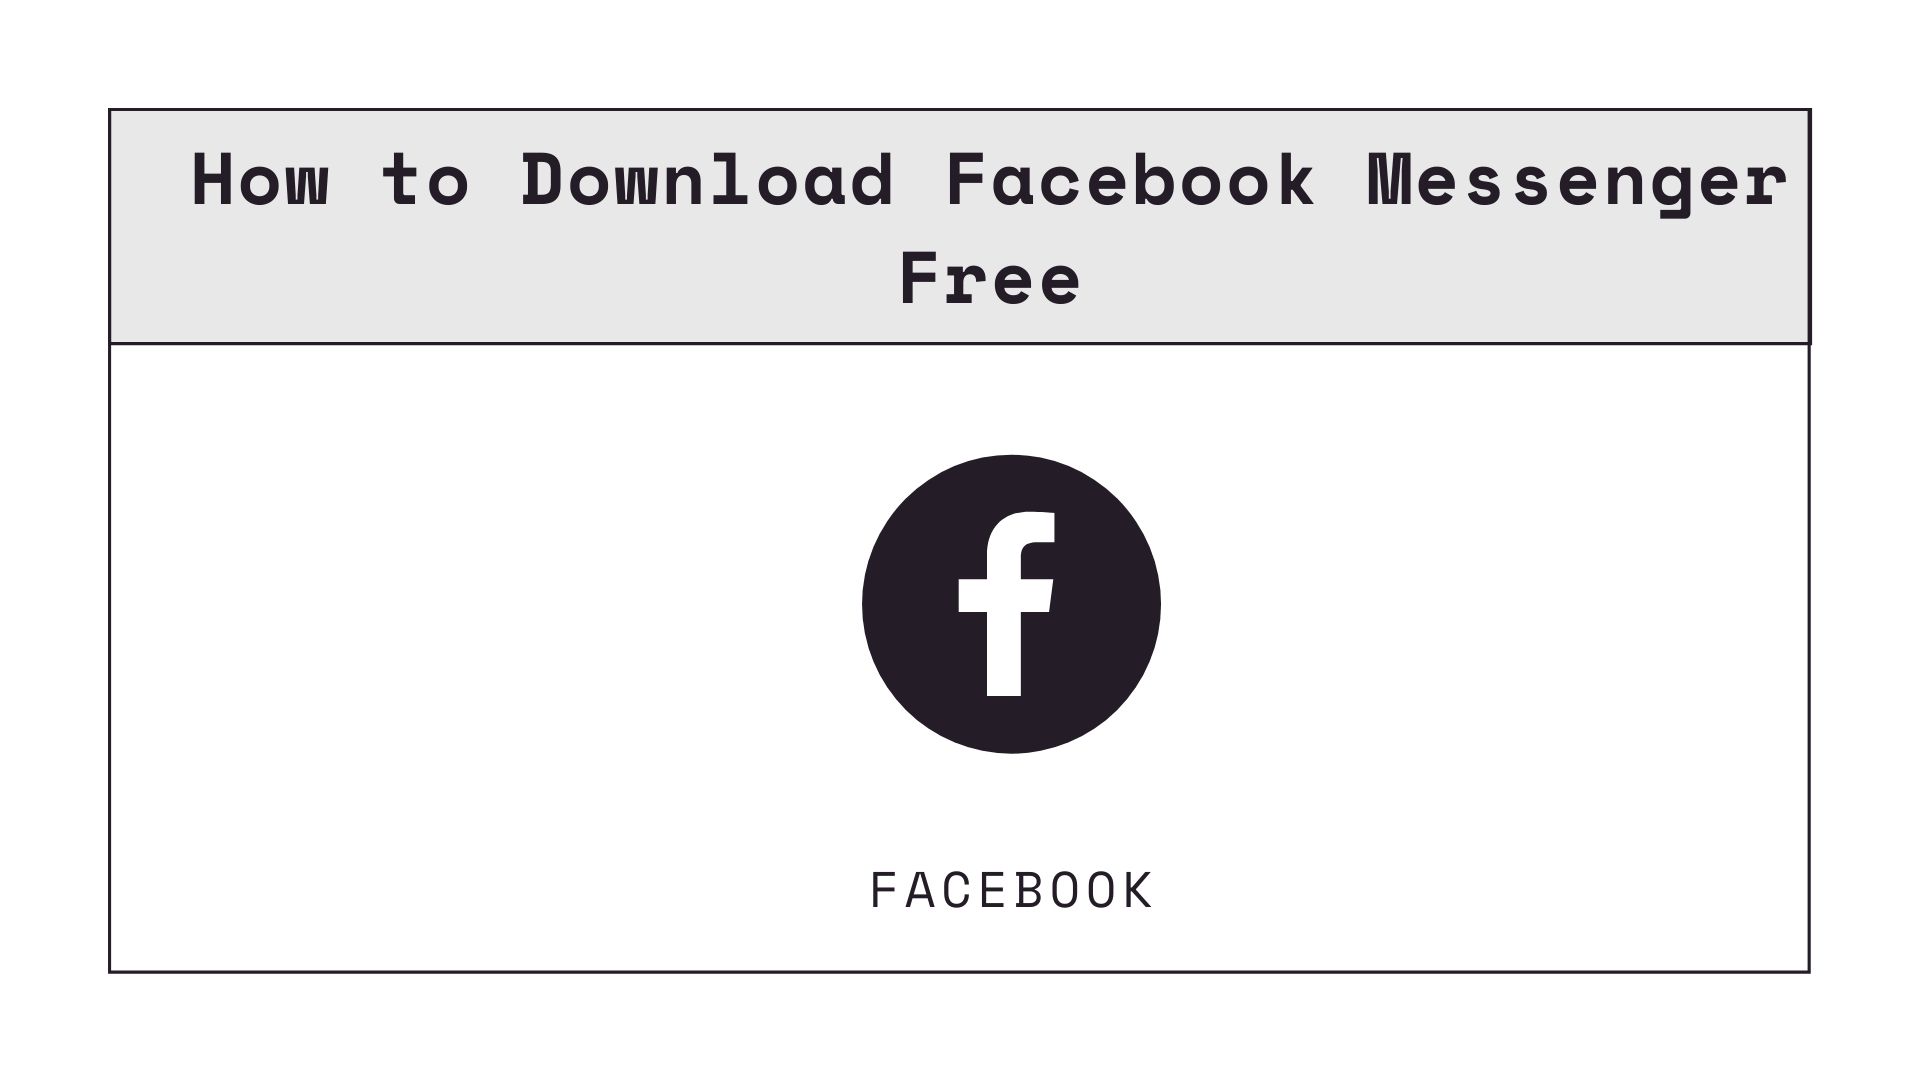 messenger for facebook download free